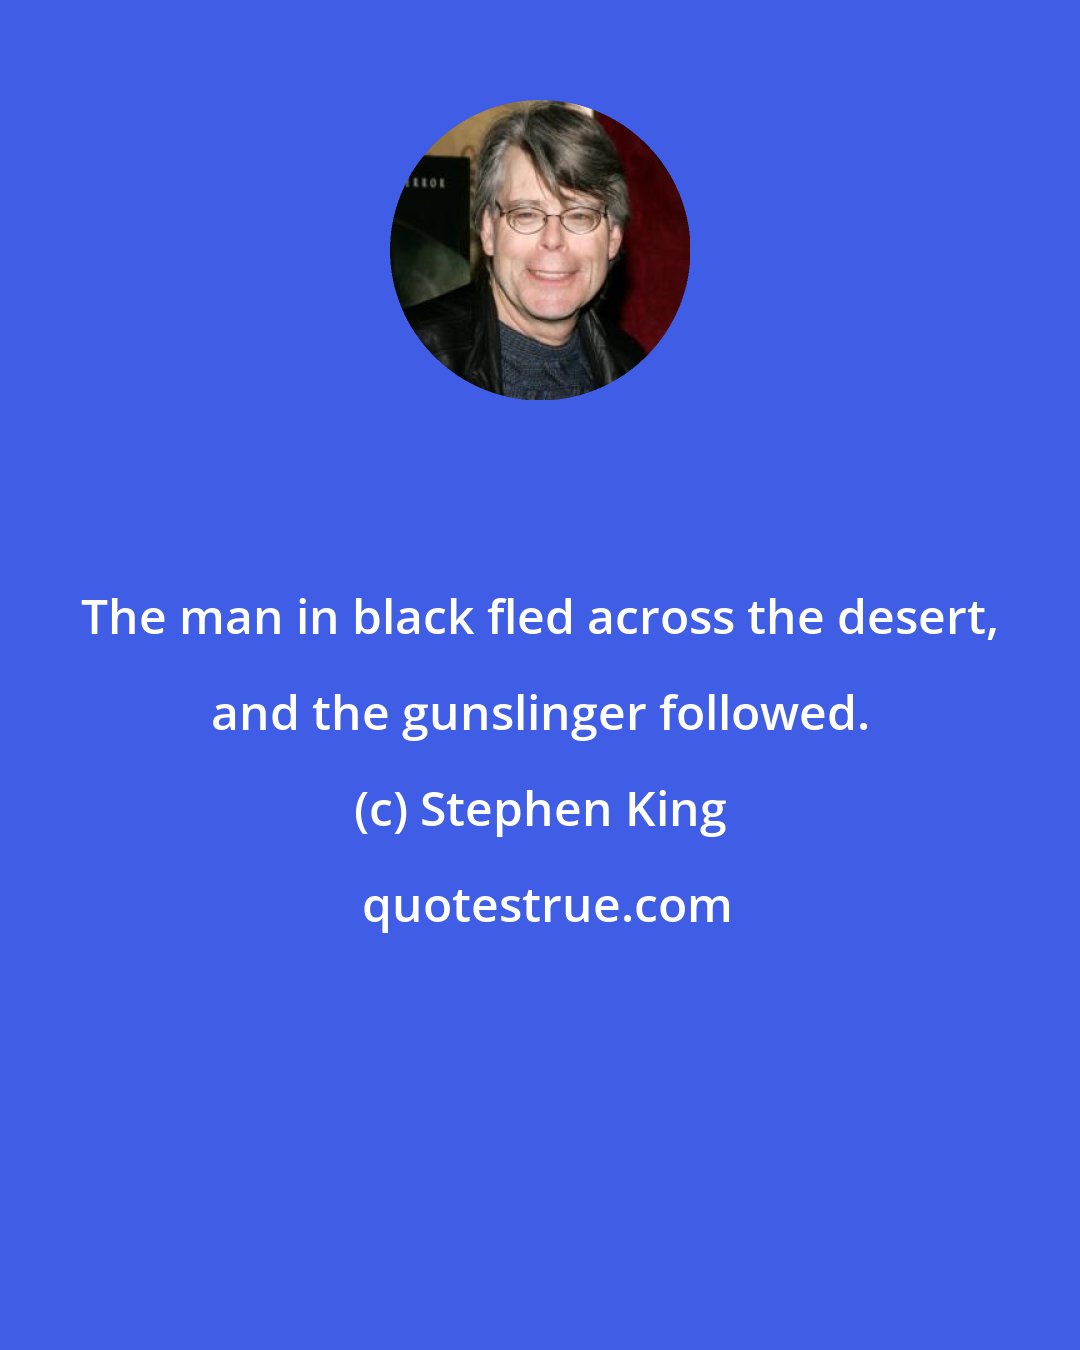 Stephen King: The man in black fled across the desert, and the gunslinger followed.